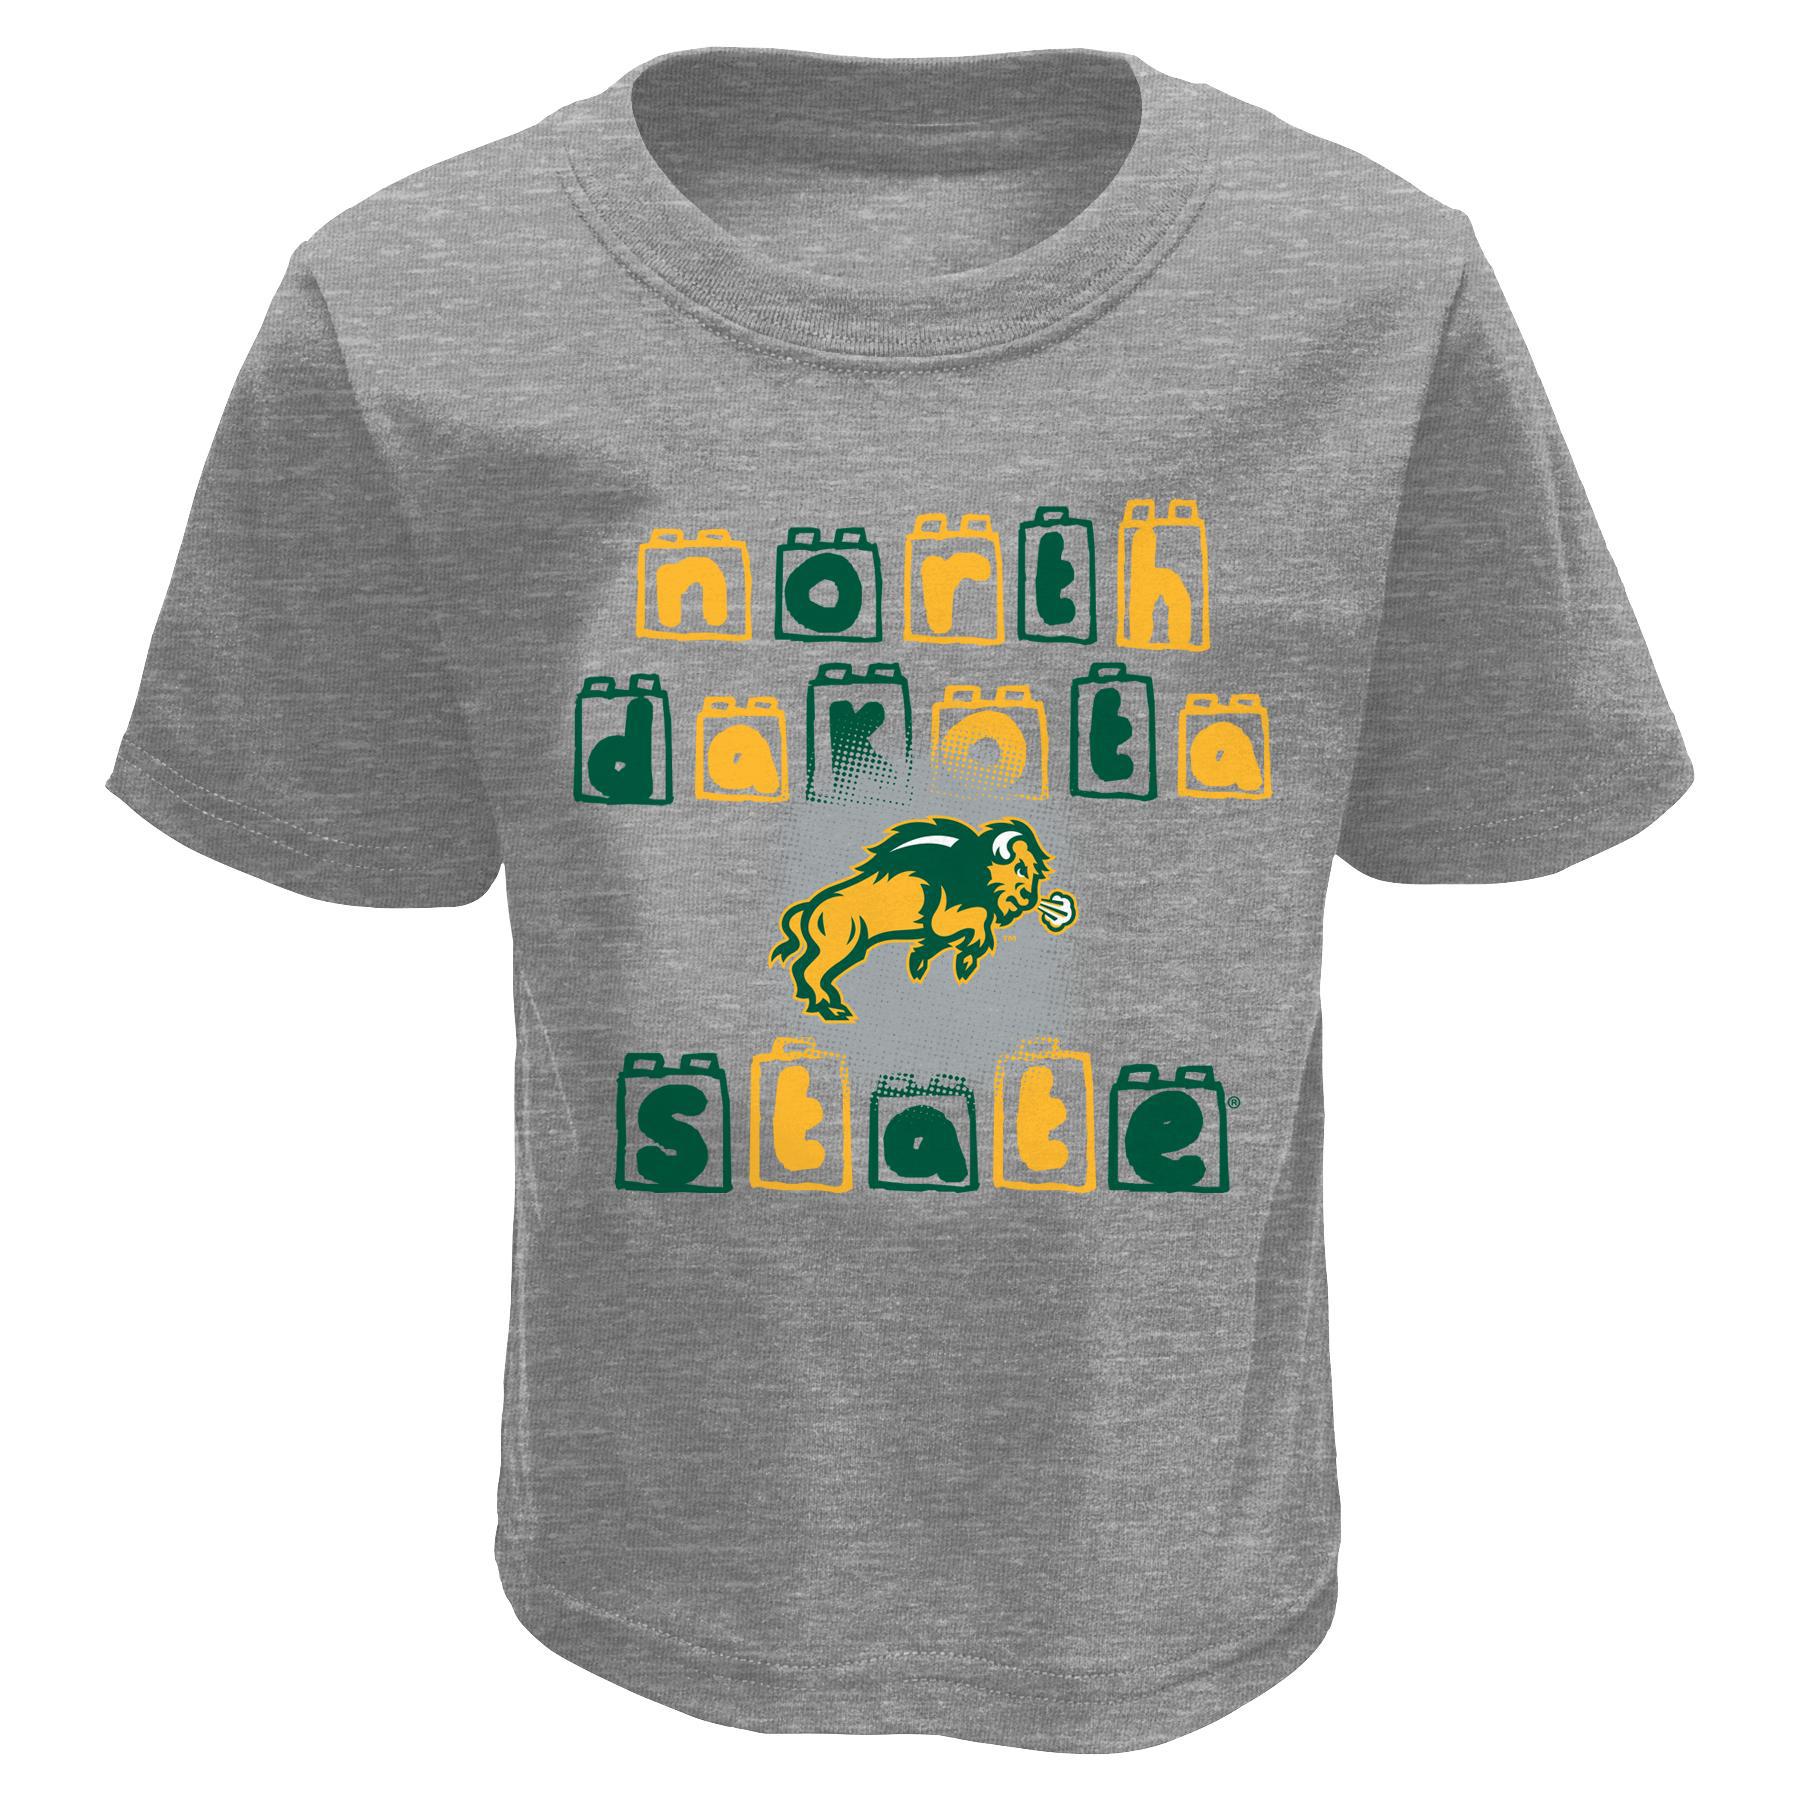 NCAA Toddler's Graphic T-Shirt - North Dakota State